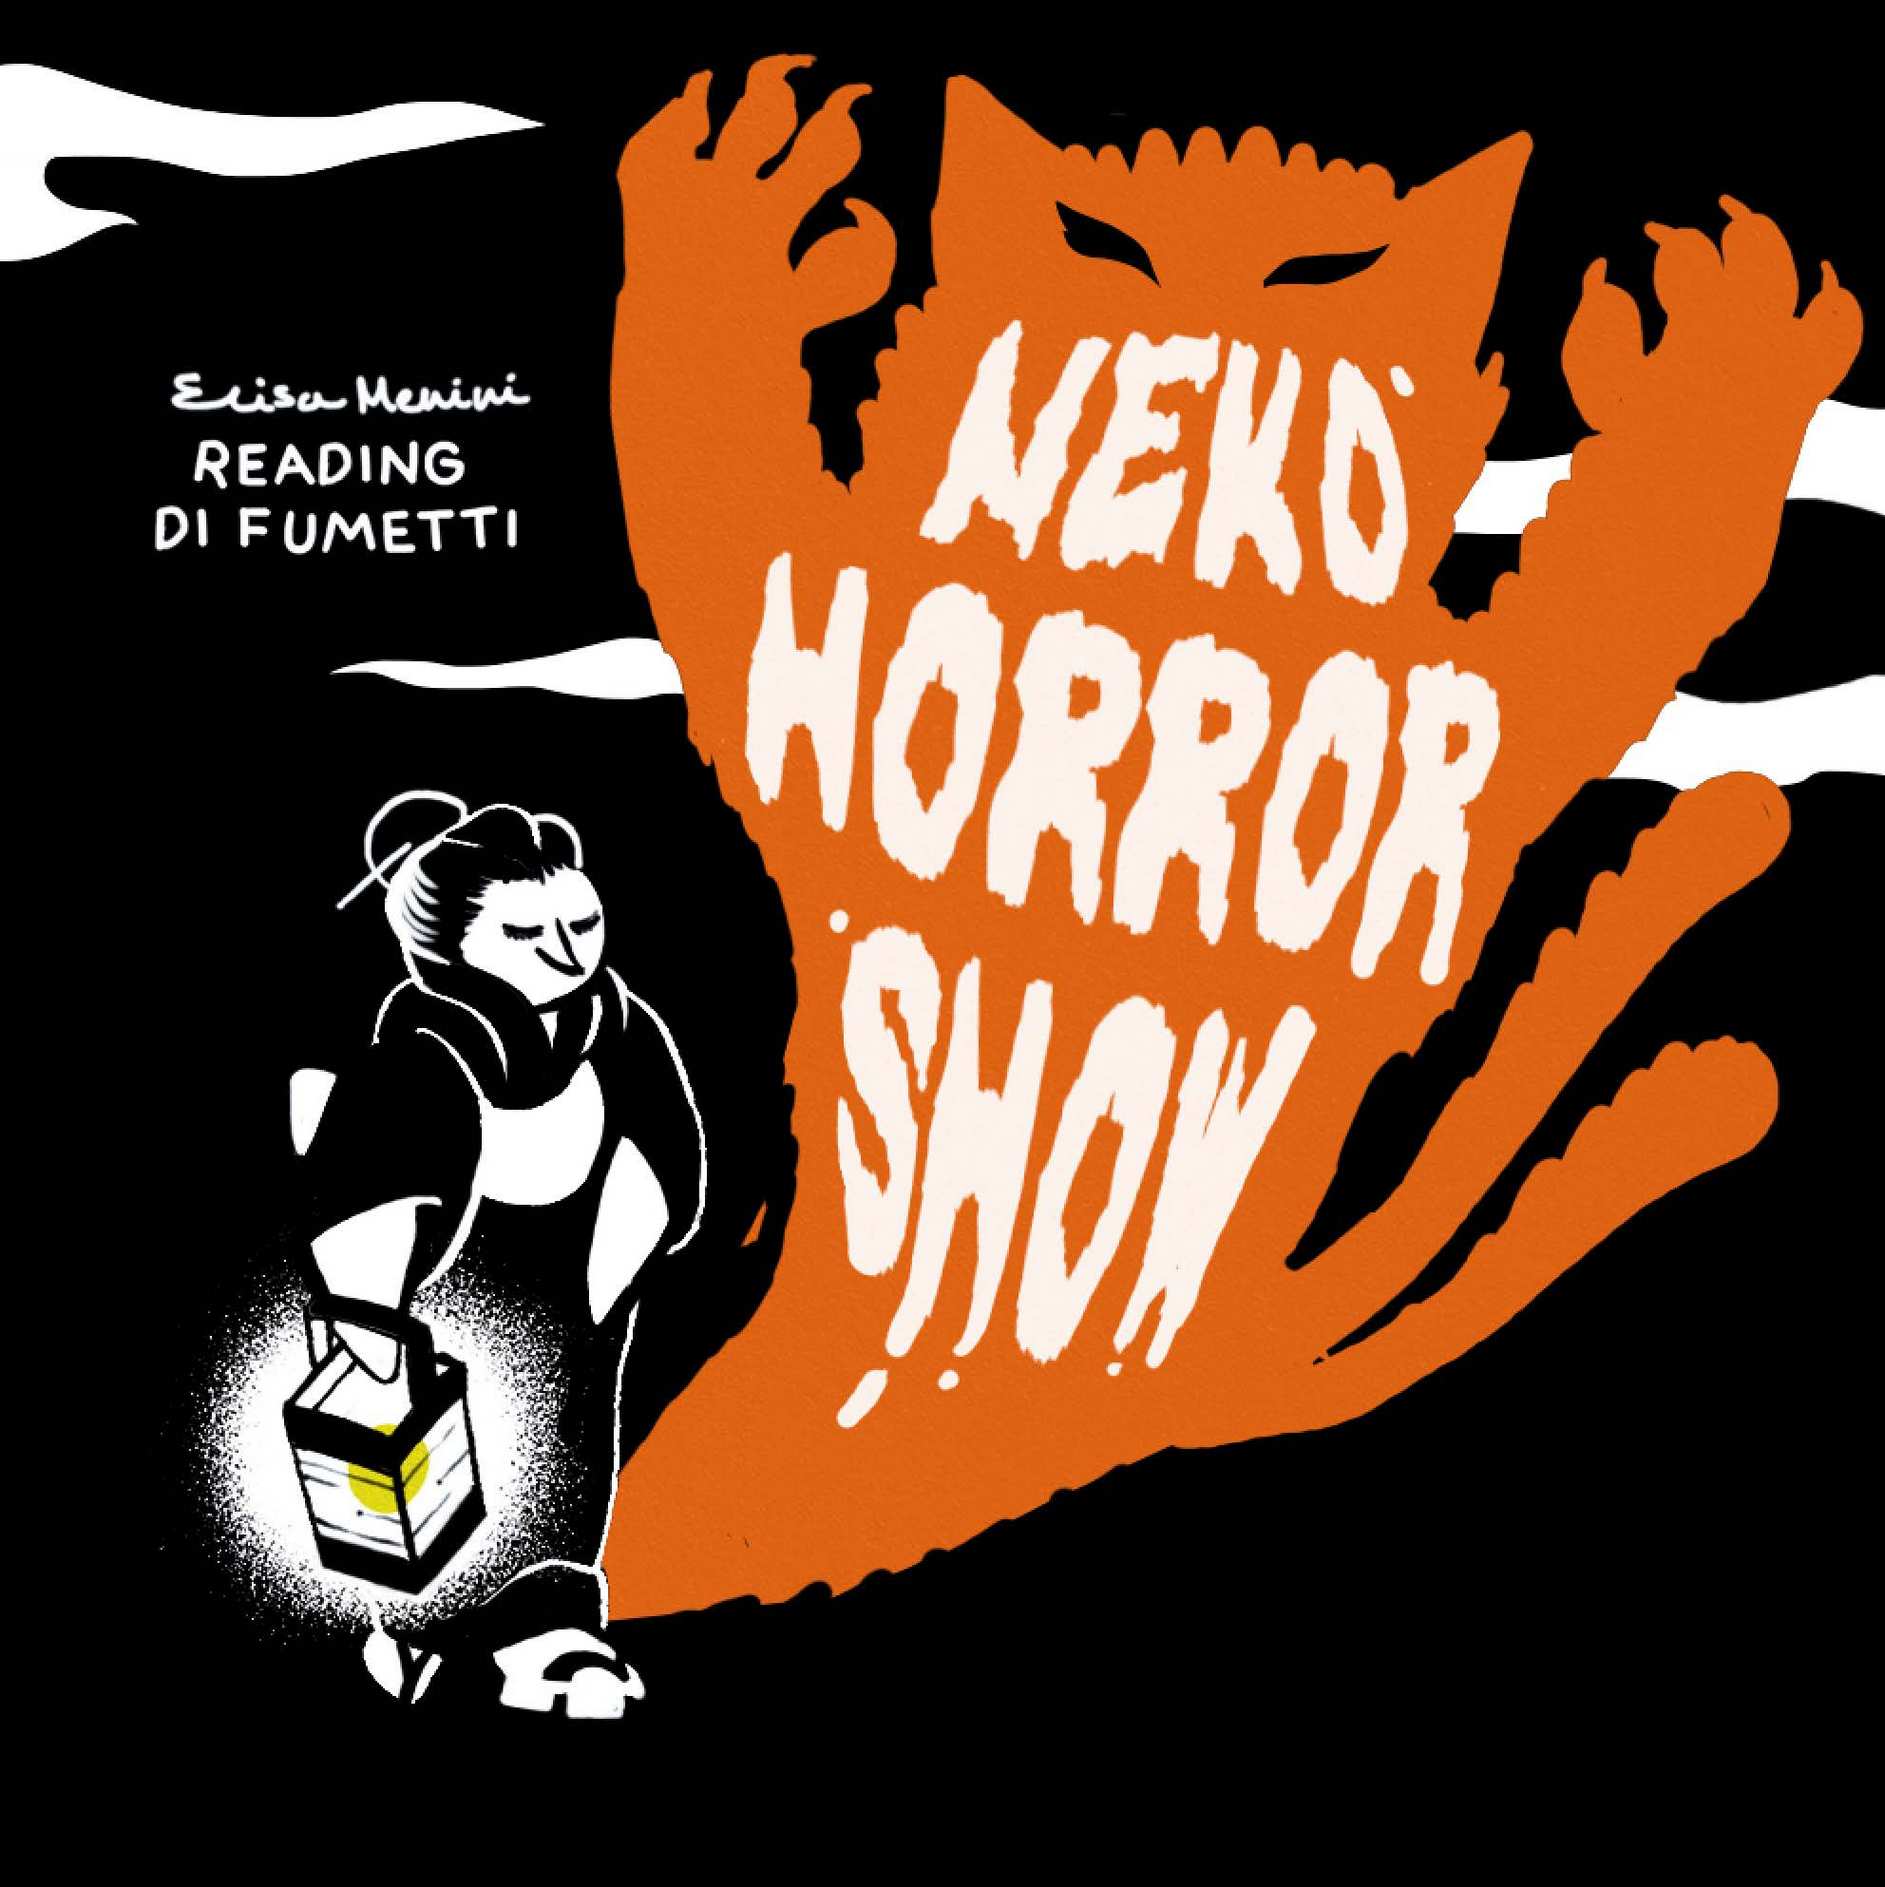 Demoni giapponesi e paura con il Neko Horror Show a Vignola!